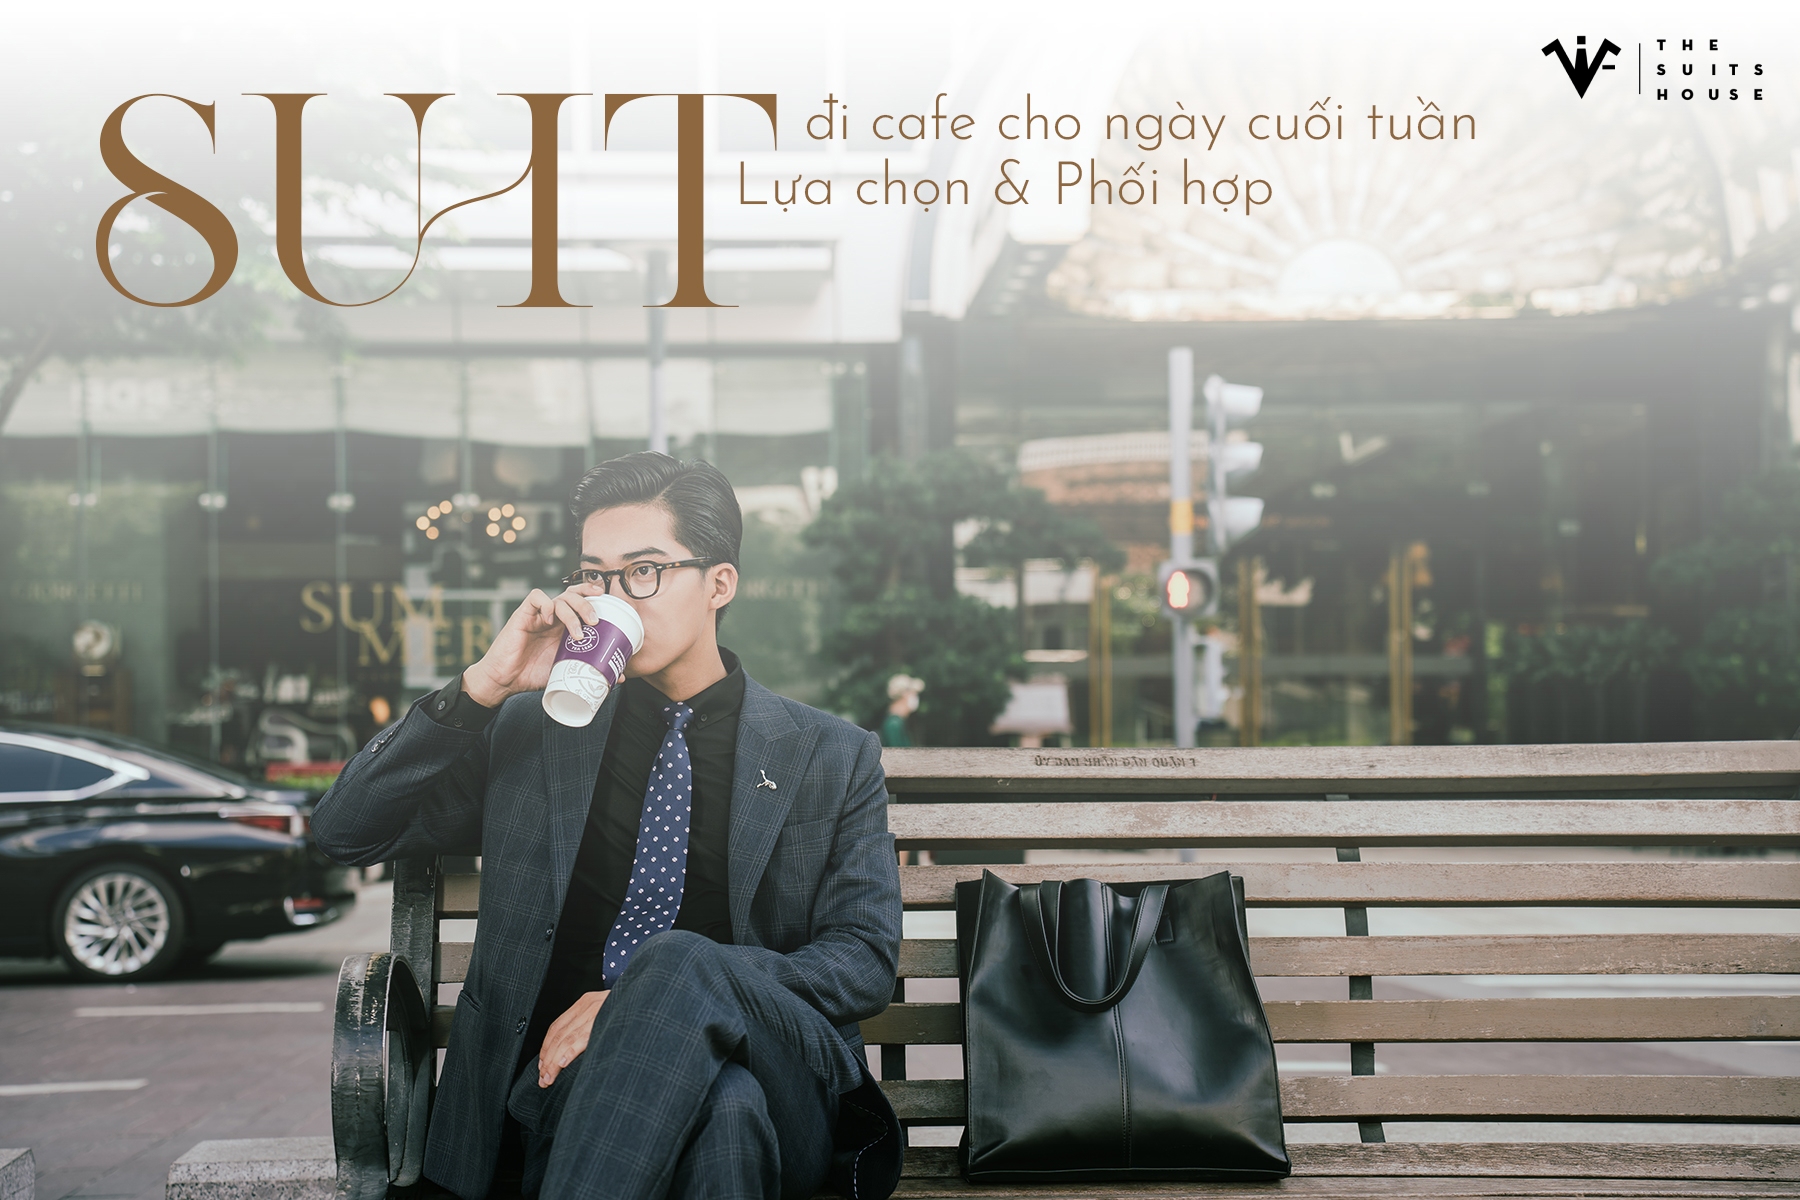 Suit Đi Cafe Cho Ngày Cuối Tuần: Lựa Chọn và Phối Hợp